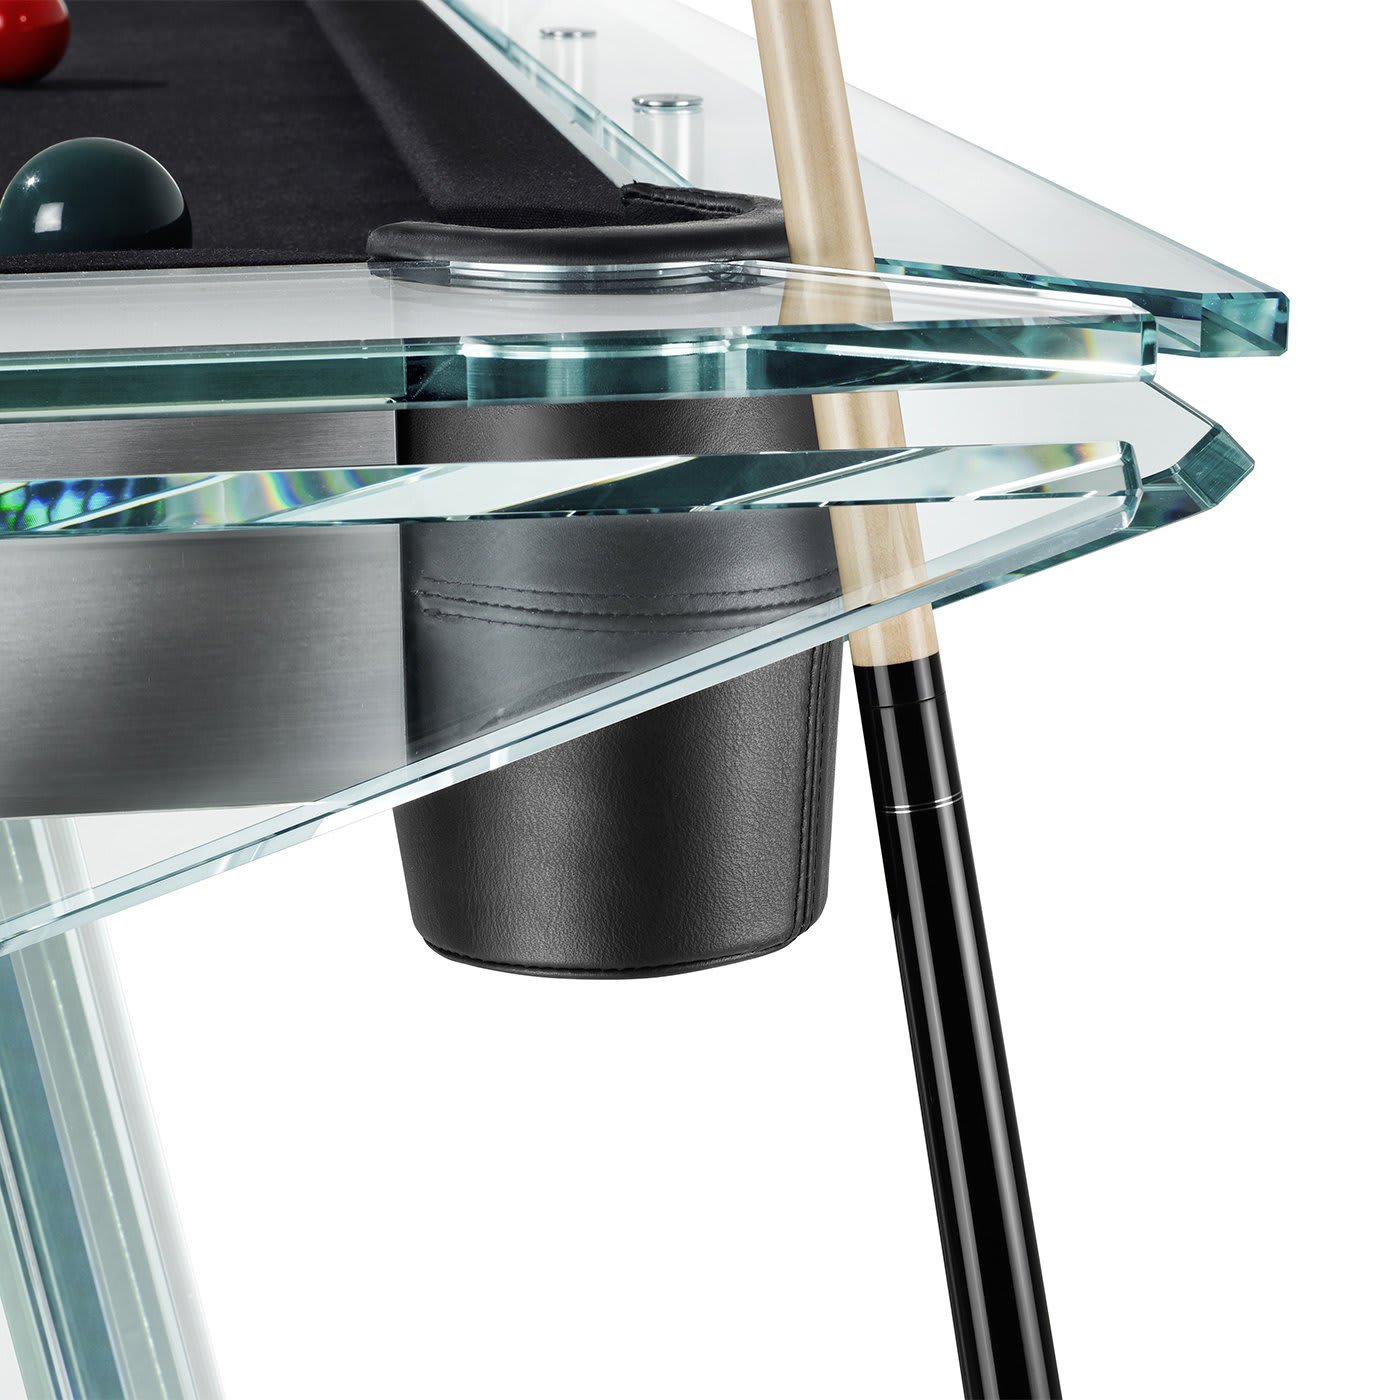 Filotto Billiard Table - Impatia